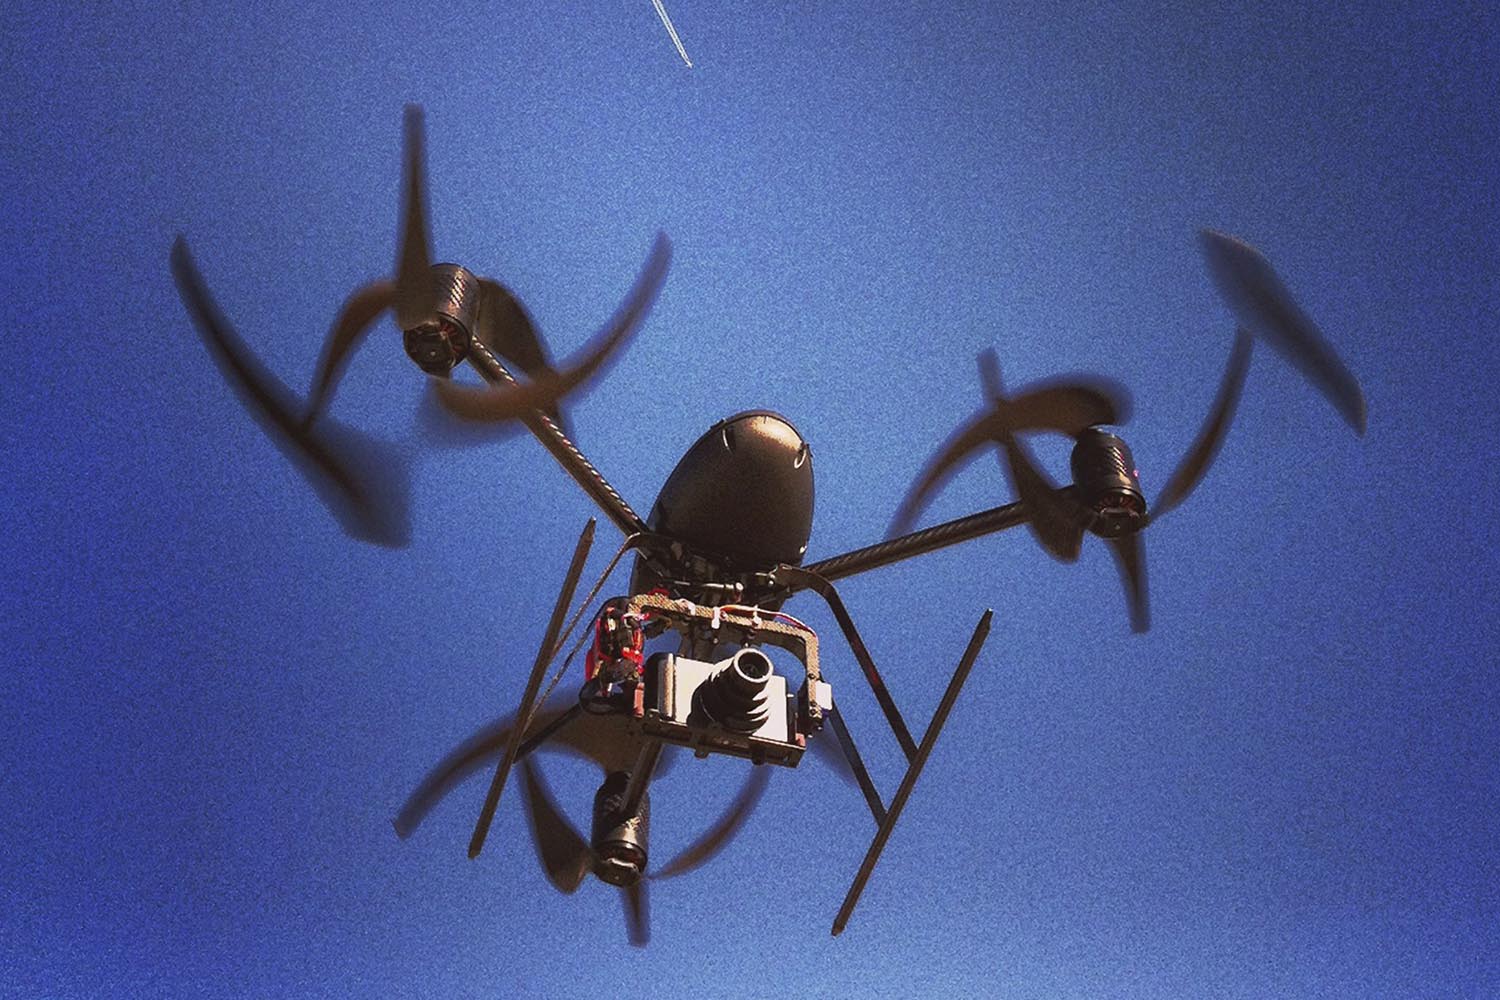 Especial Drones. El 'drone' Draganflyer X6 puede volar a 50 km/h y subir hasta los 400 m de altura